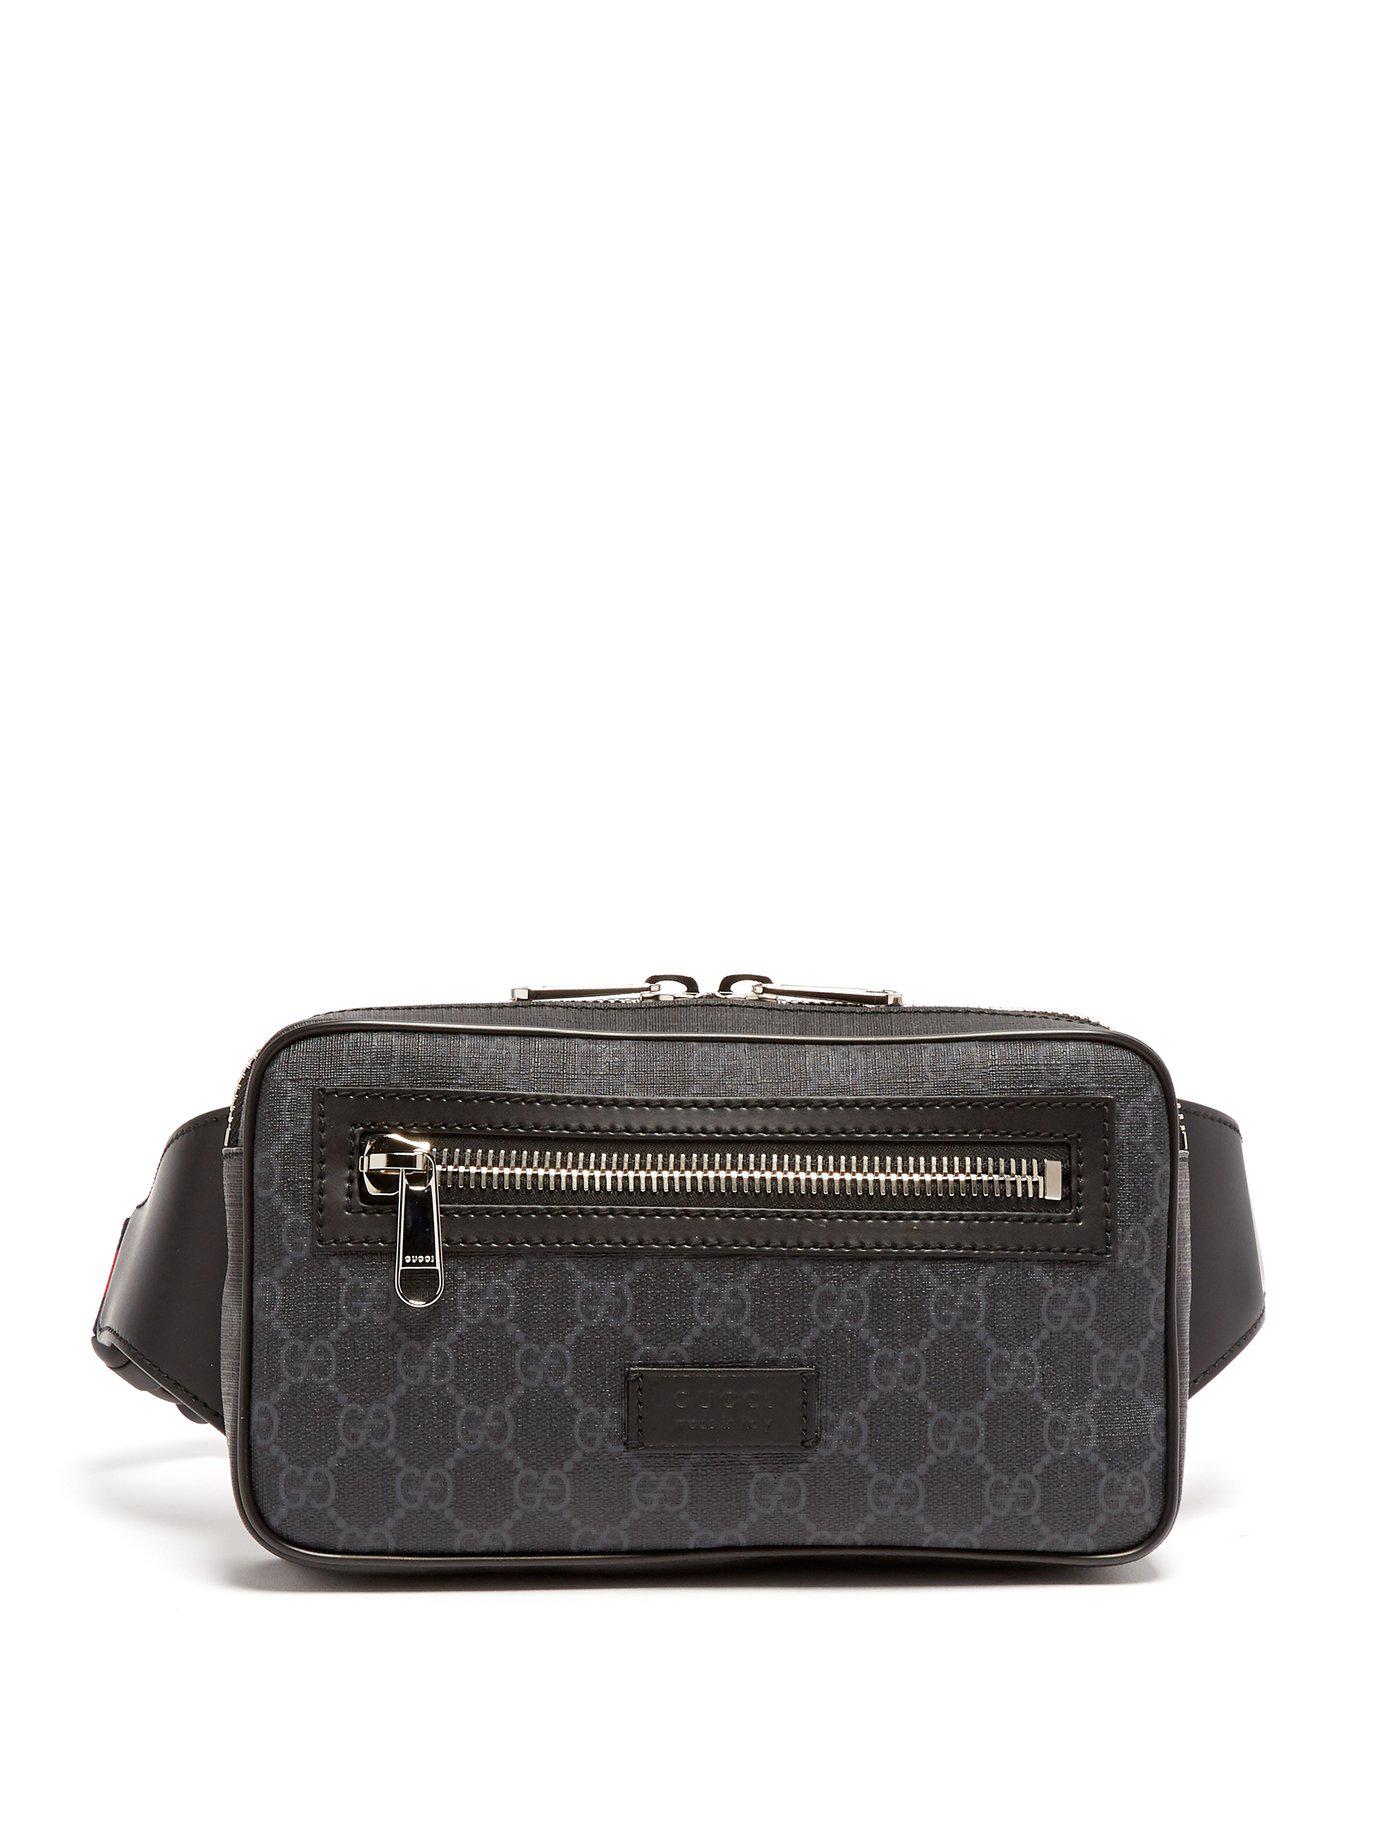 Gucci Gg Supreme Leather Belt Bag in Black for Men - Lyst